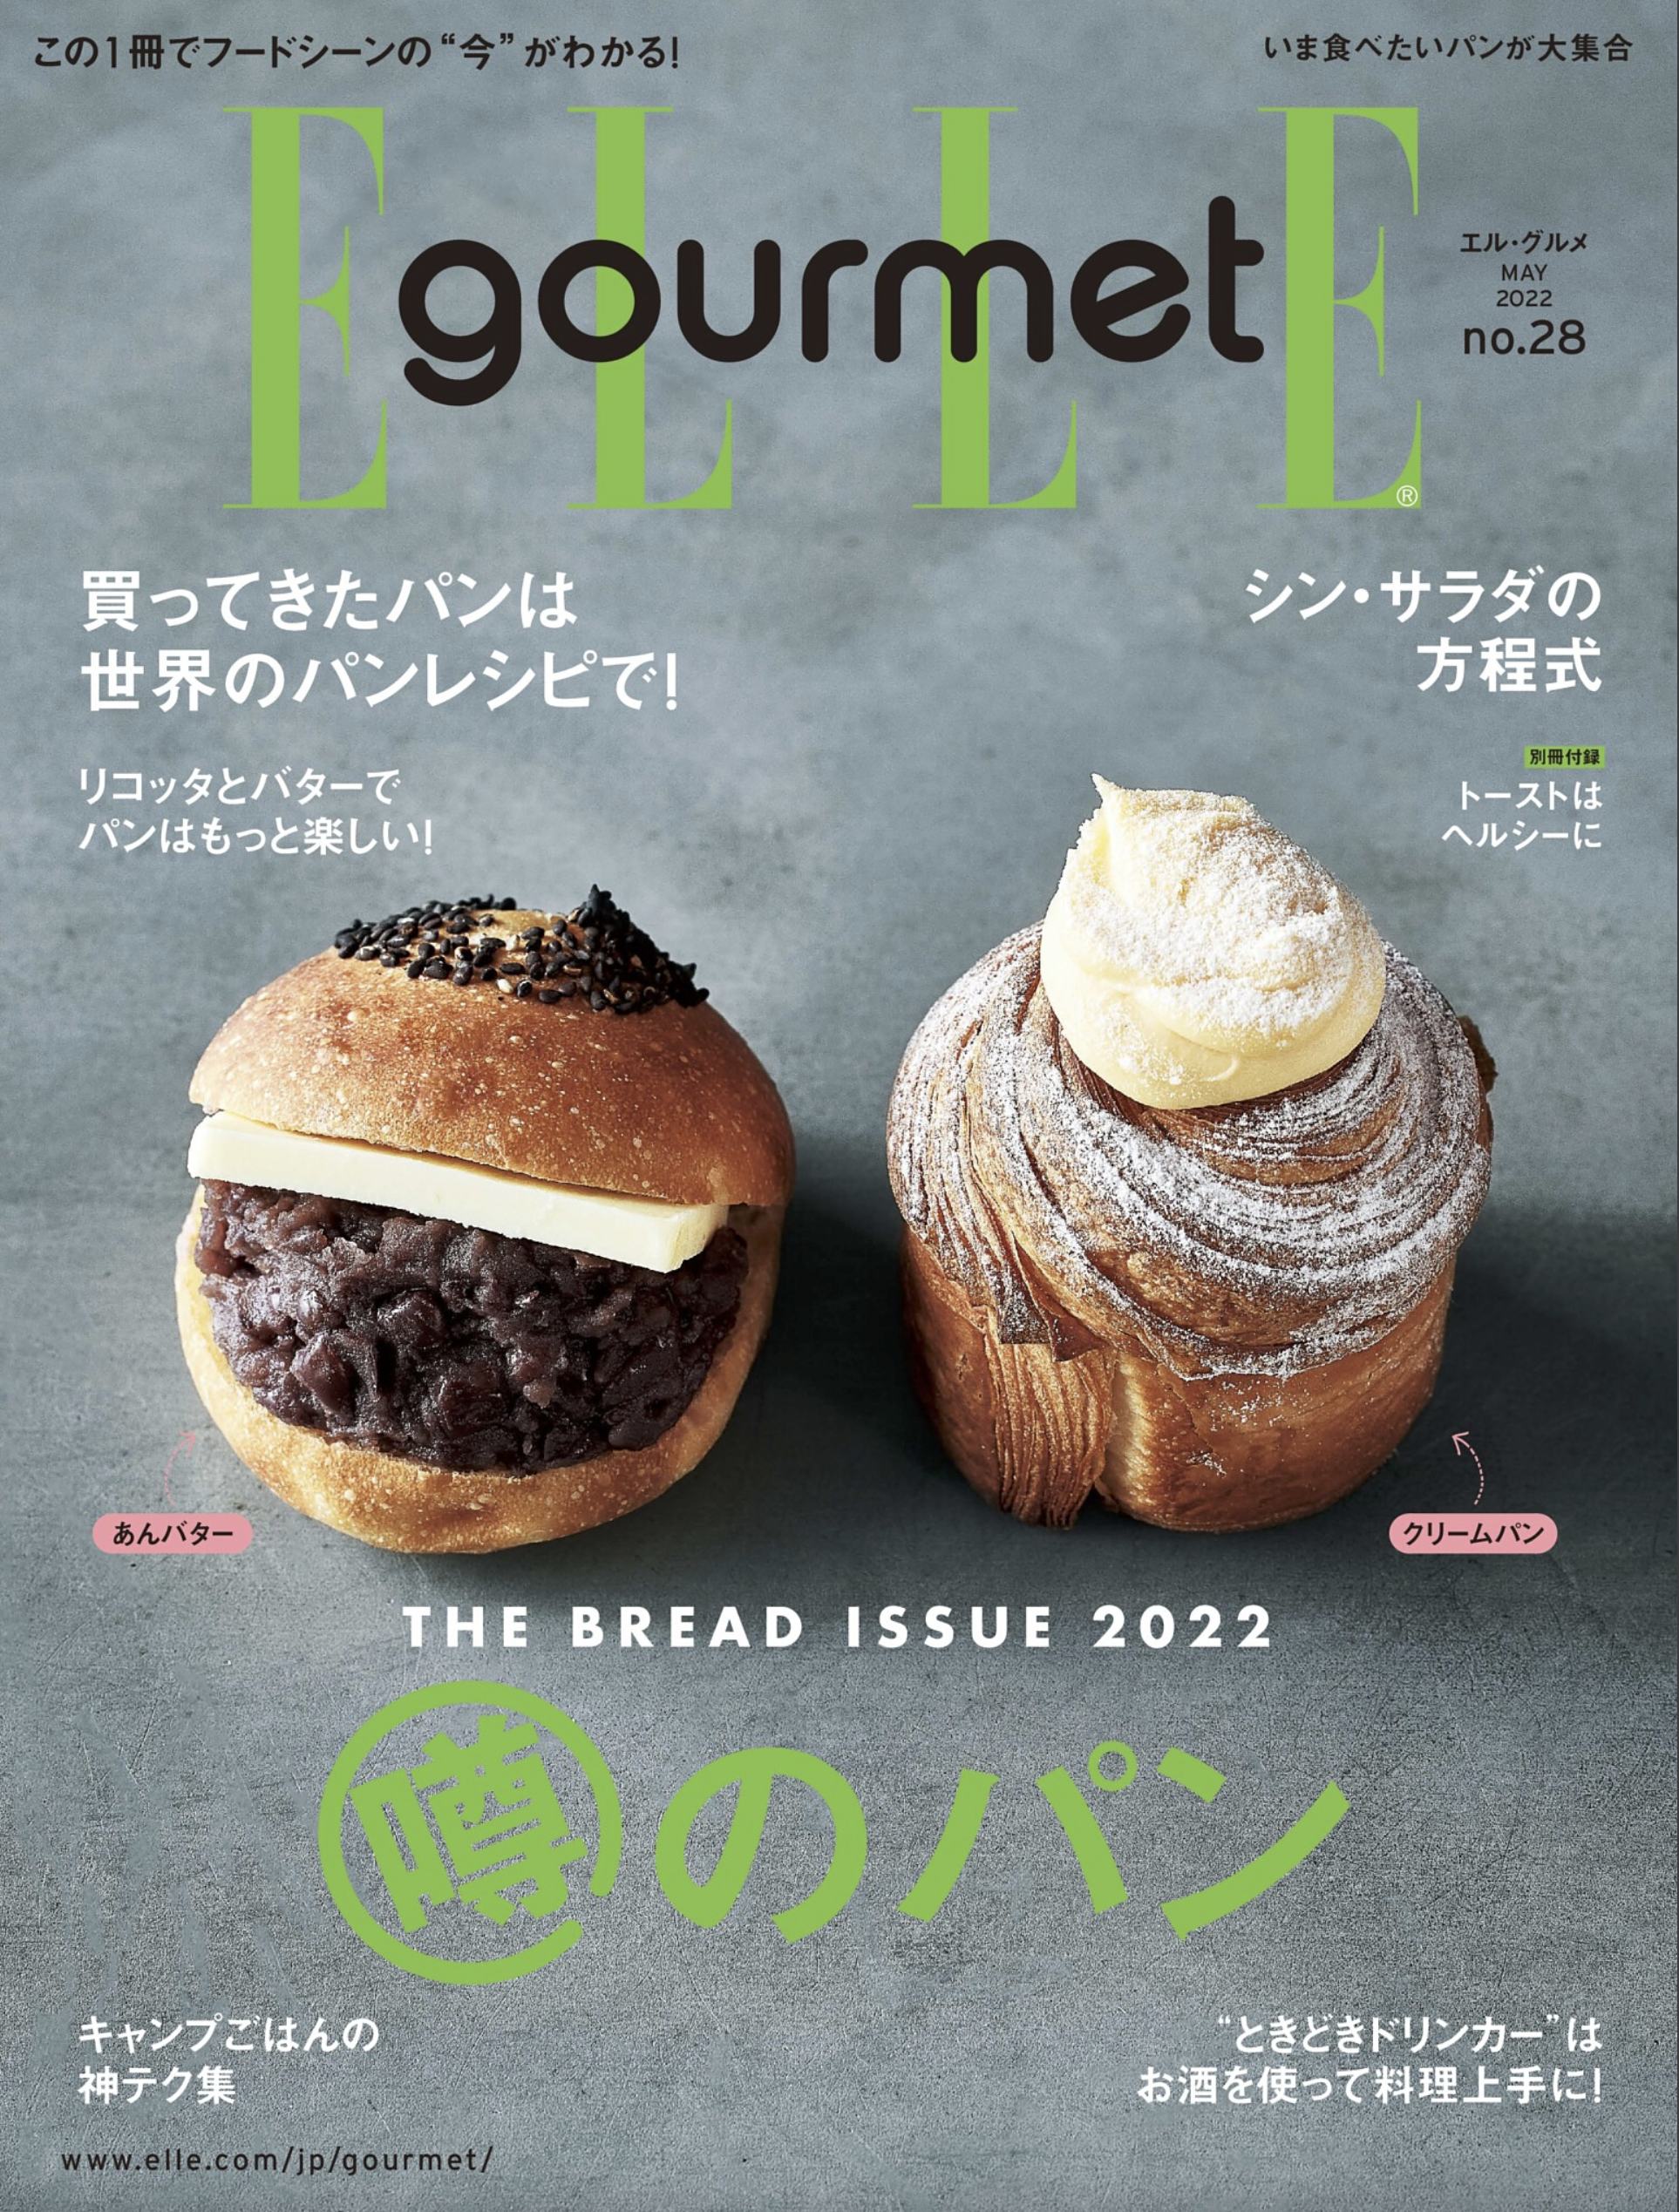 大木慎太郎がELLE gourme 5月号の表紙と中ページ写真を撮りおろしました